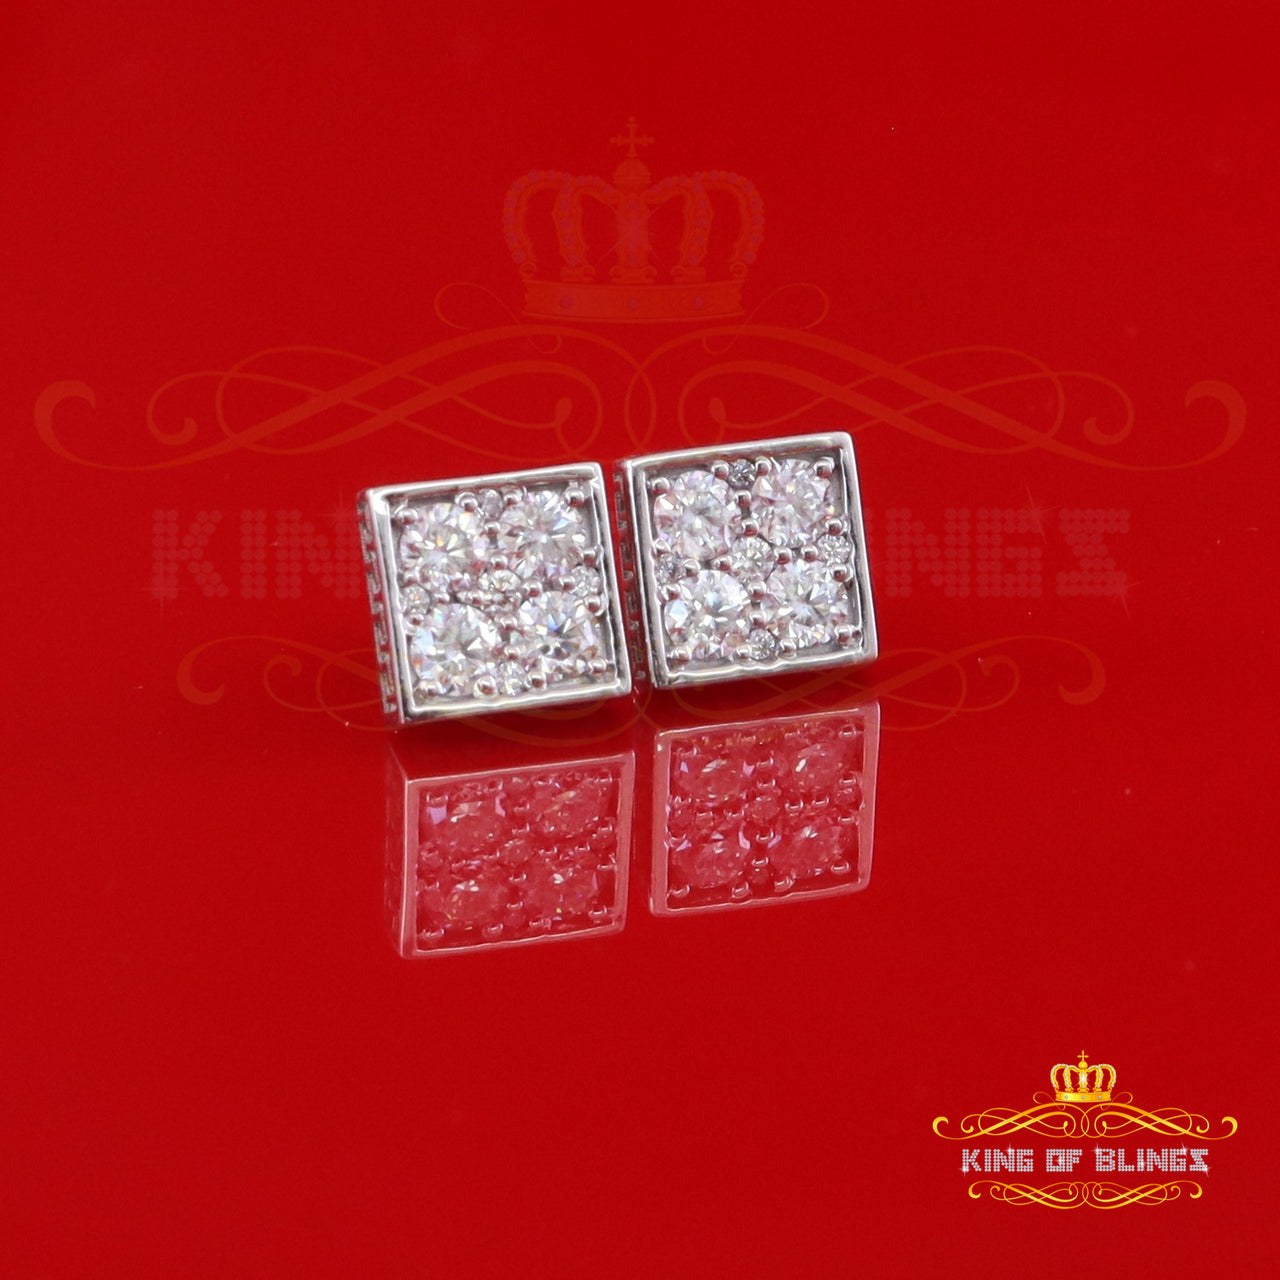 King of Bling's White Silver 1.00ct VVS 'D' Moissanite Men's/Womens Square cut Earring King of Blings